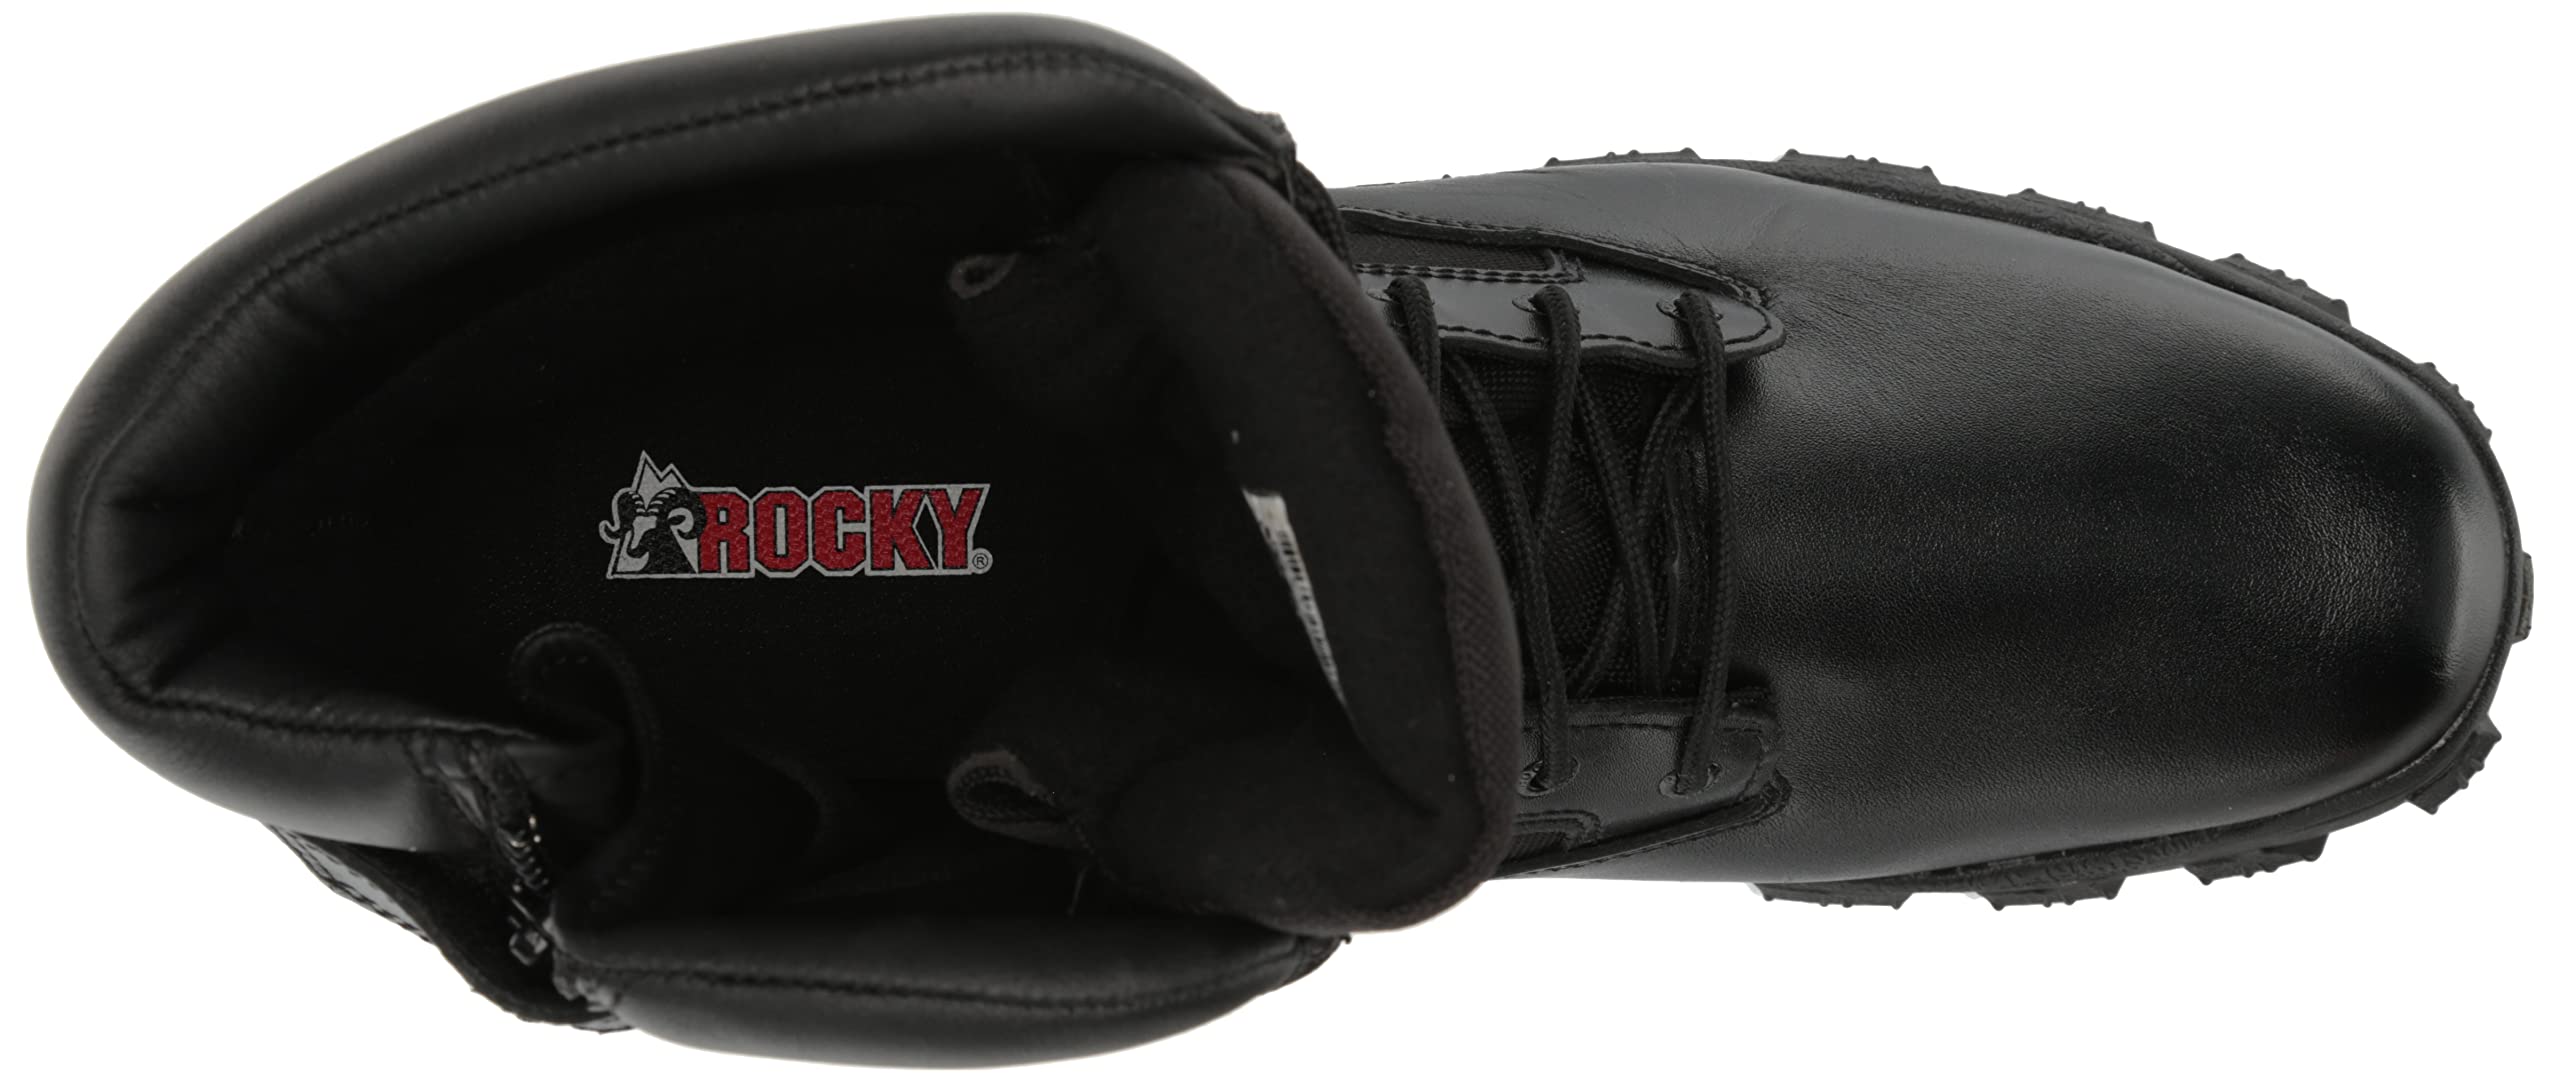 Rocky Alphaforce Zipper Waterproof Duty Boot